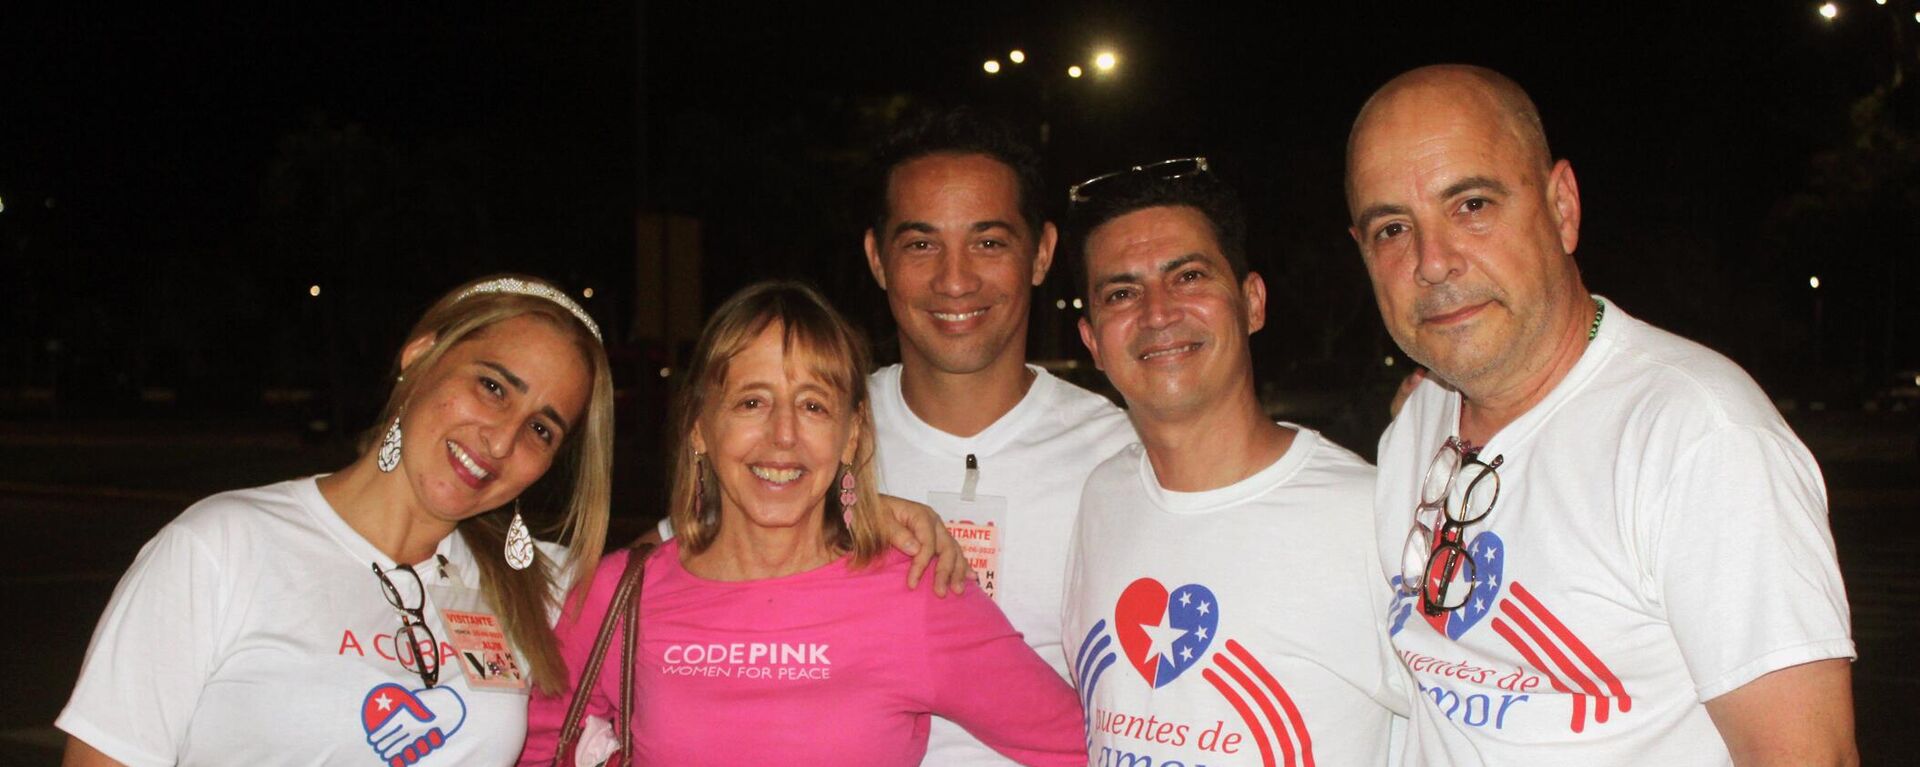 Medea Benjamín, líder de la organización estadounidense Code Pink (con camisa rosada), y el cubanoamericano Carlos Lazo, coordinador de Puentes de Amor (derecha) - Sputnik Mundo, 1920, 12.06.2022